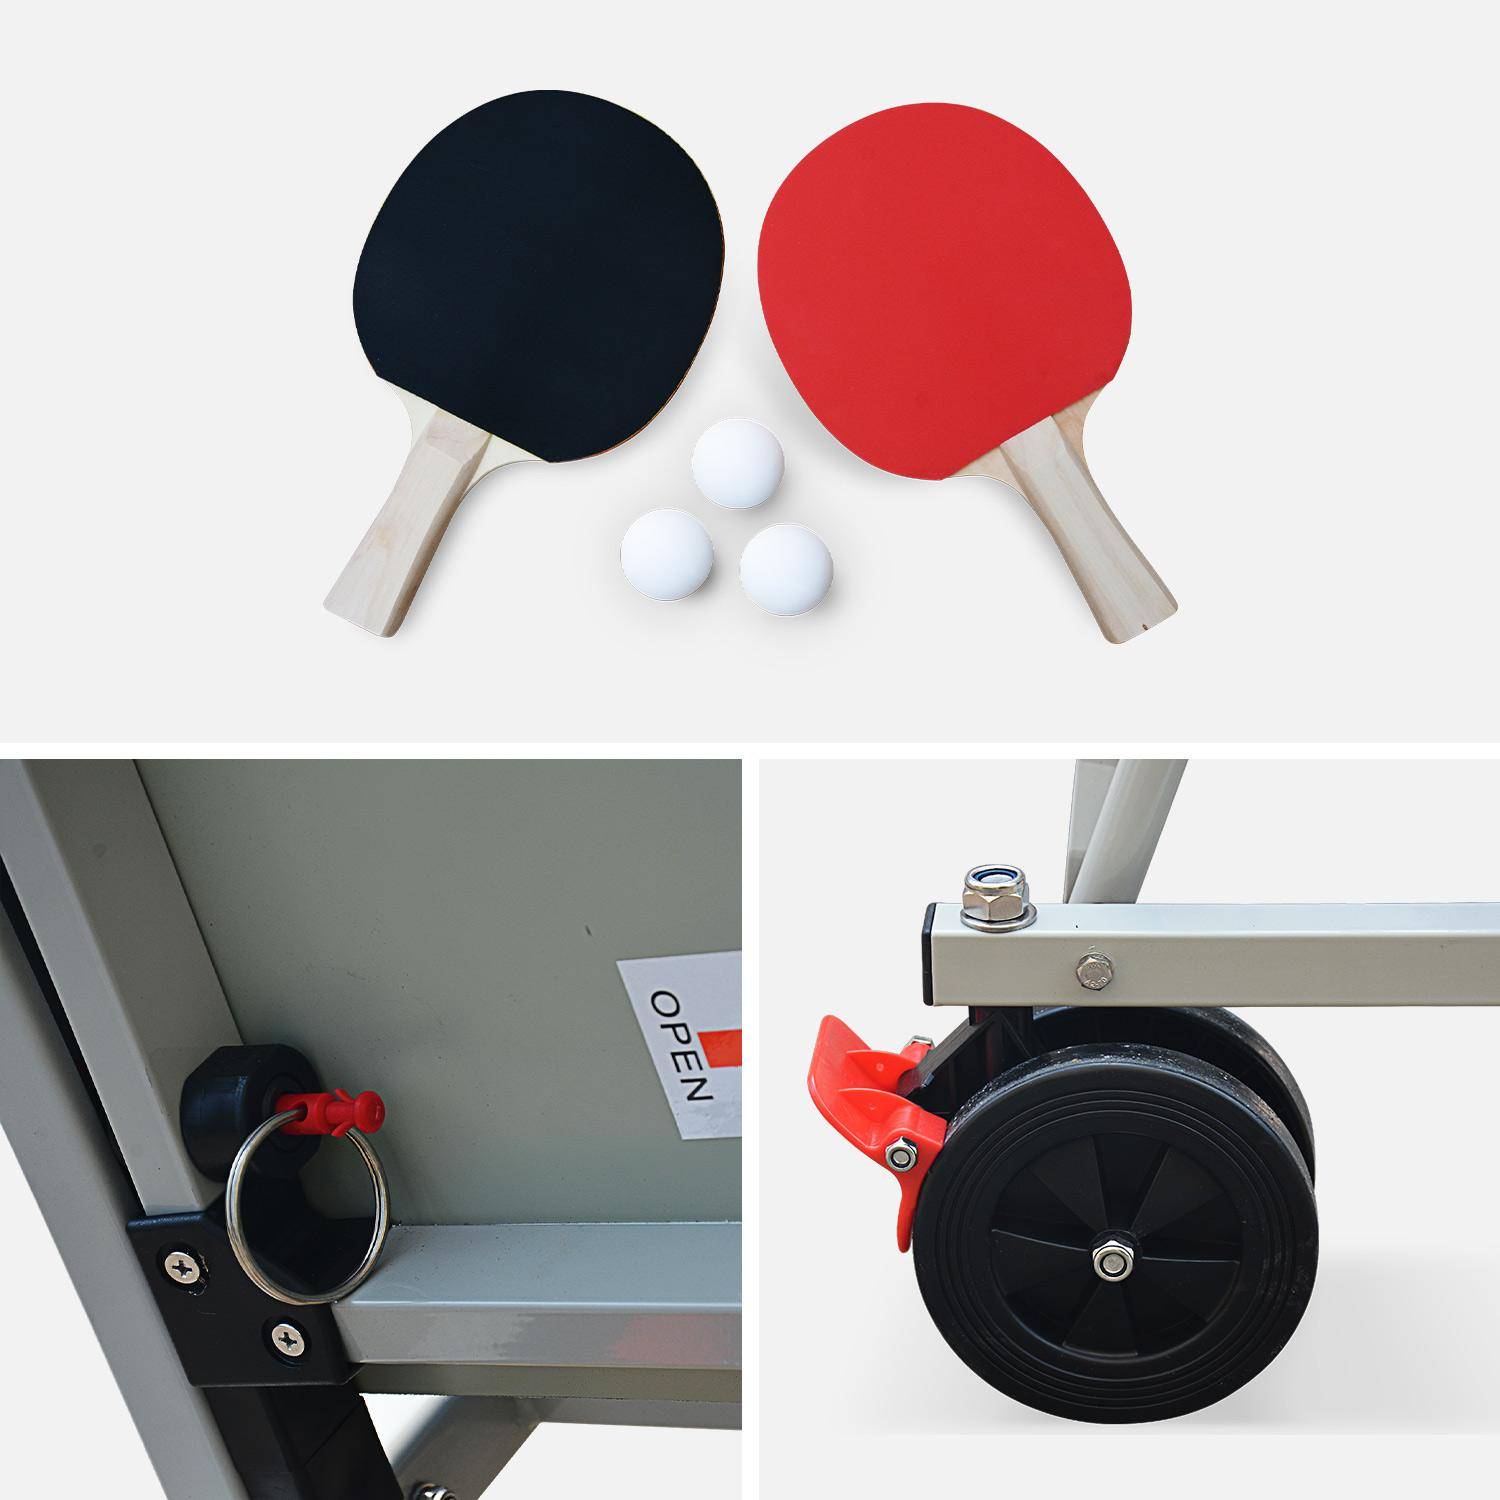 Table de ping pong OUTDOOR, avec 2 raquettes et 3 balles, pour utilisation extérieure + Housse en PVC Photo7